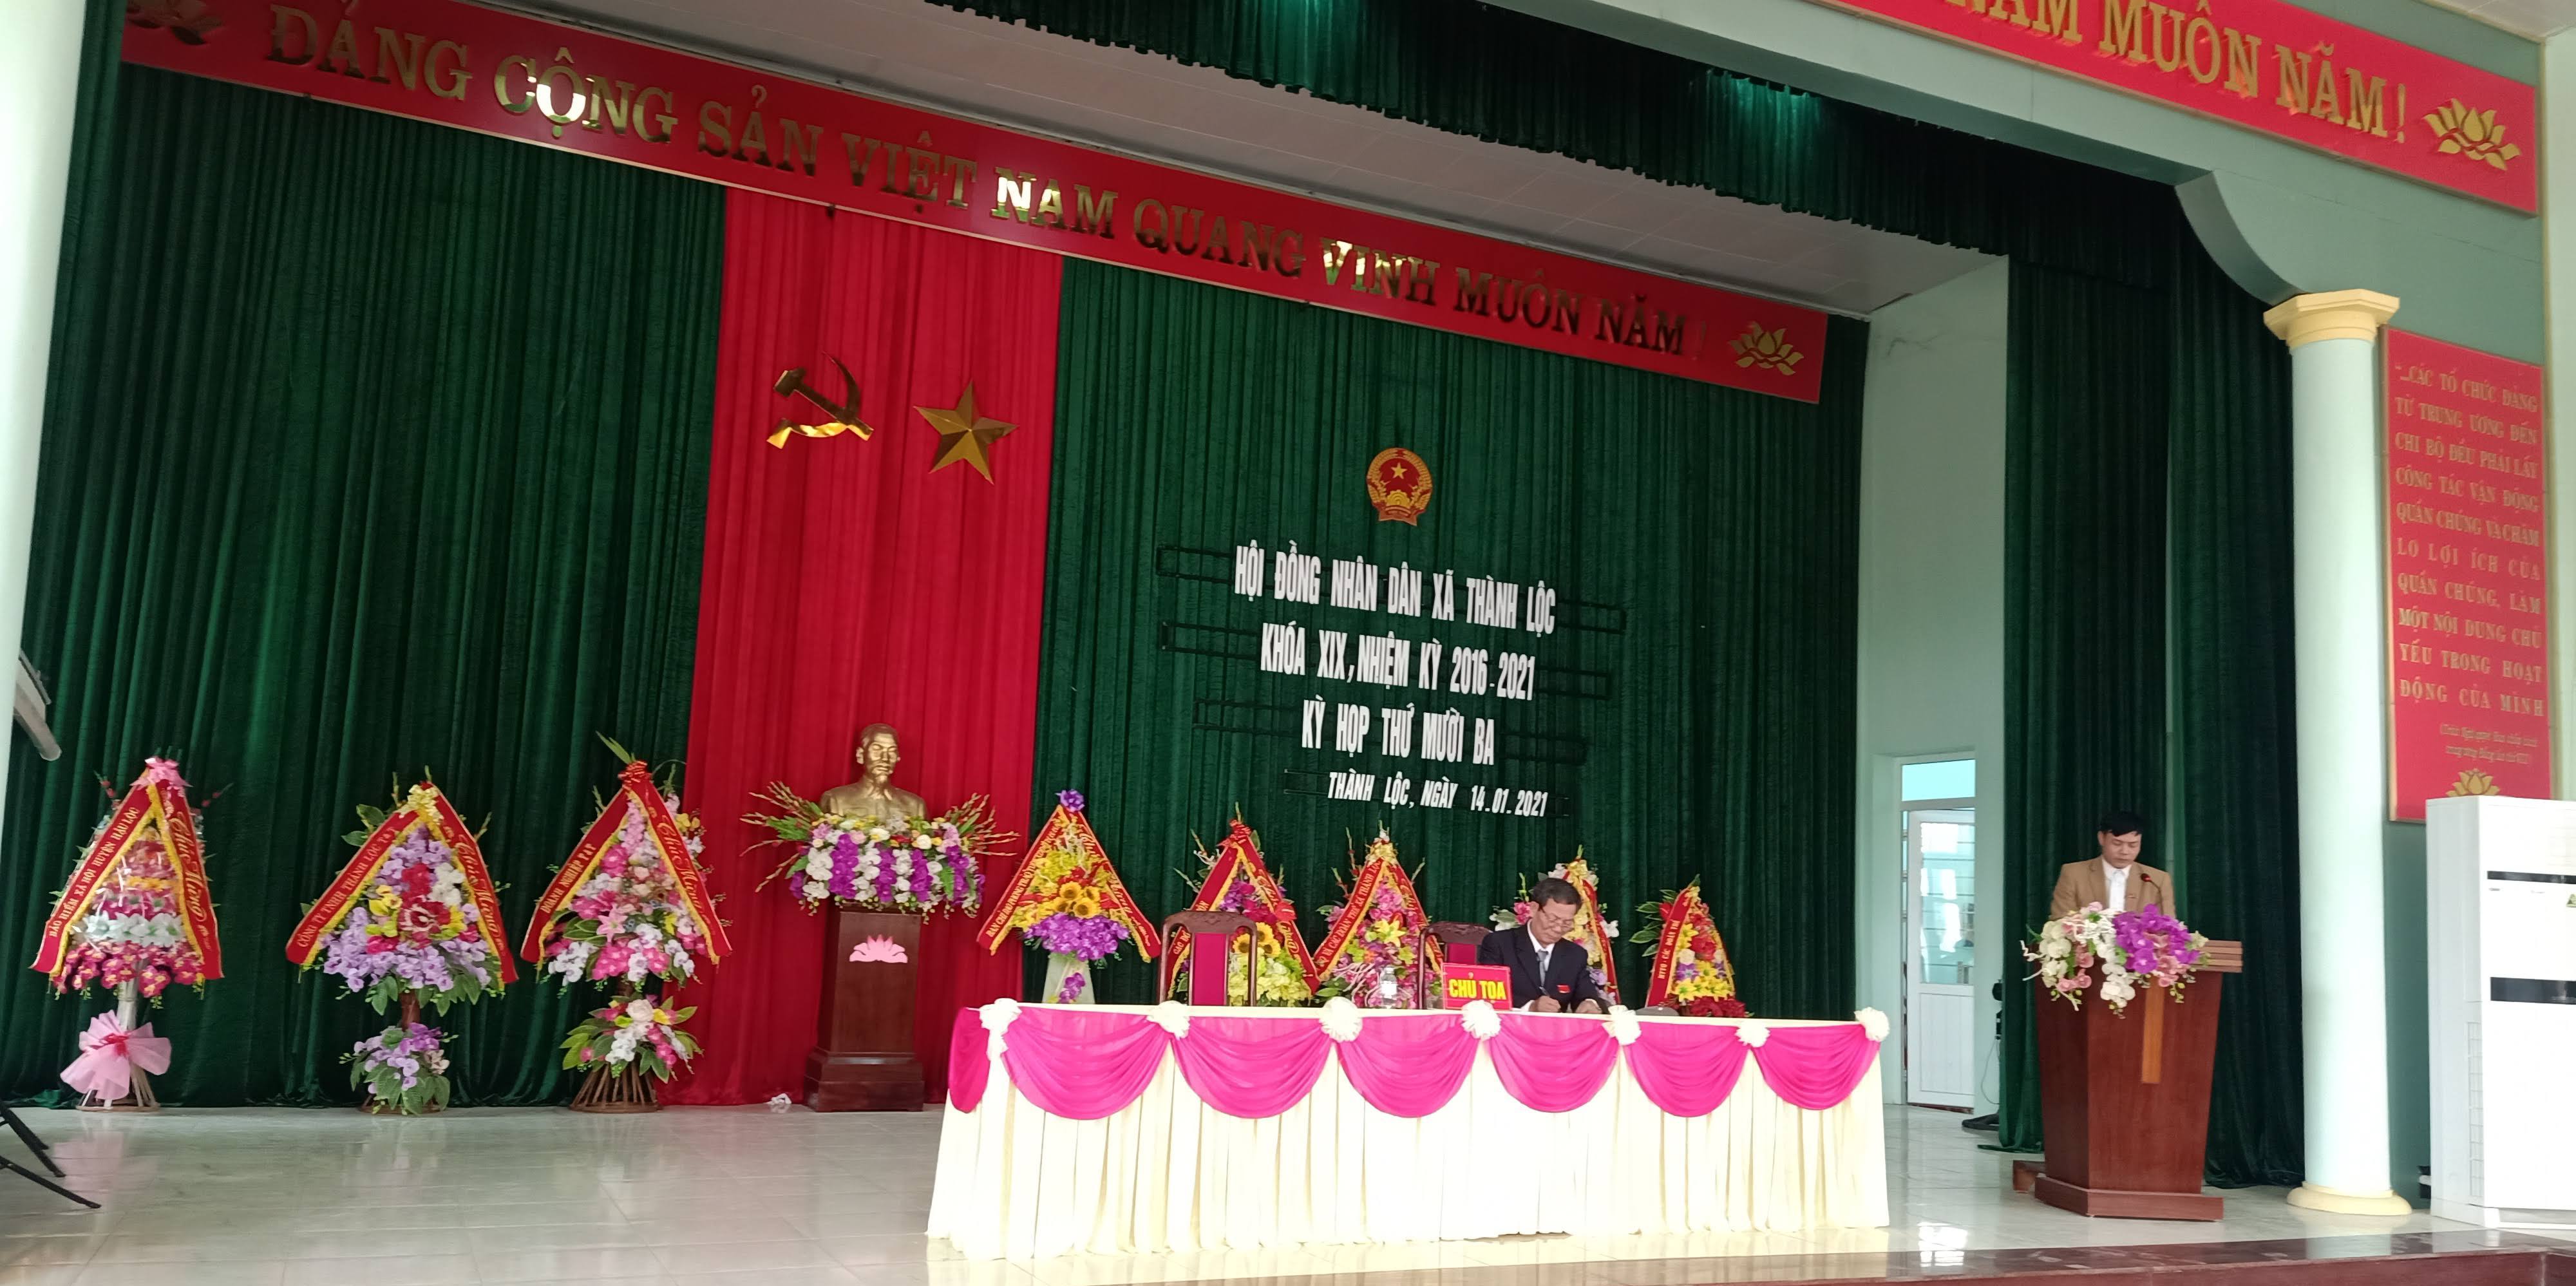 Ngày 14/01/2021, HĐND xã Thành Lộc đã tiến hành kỳ họp thứ 13, khóa XIX, nhiệm kỳ 2016-2021